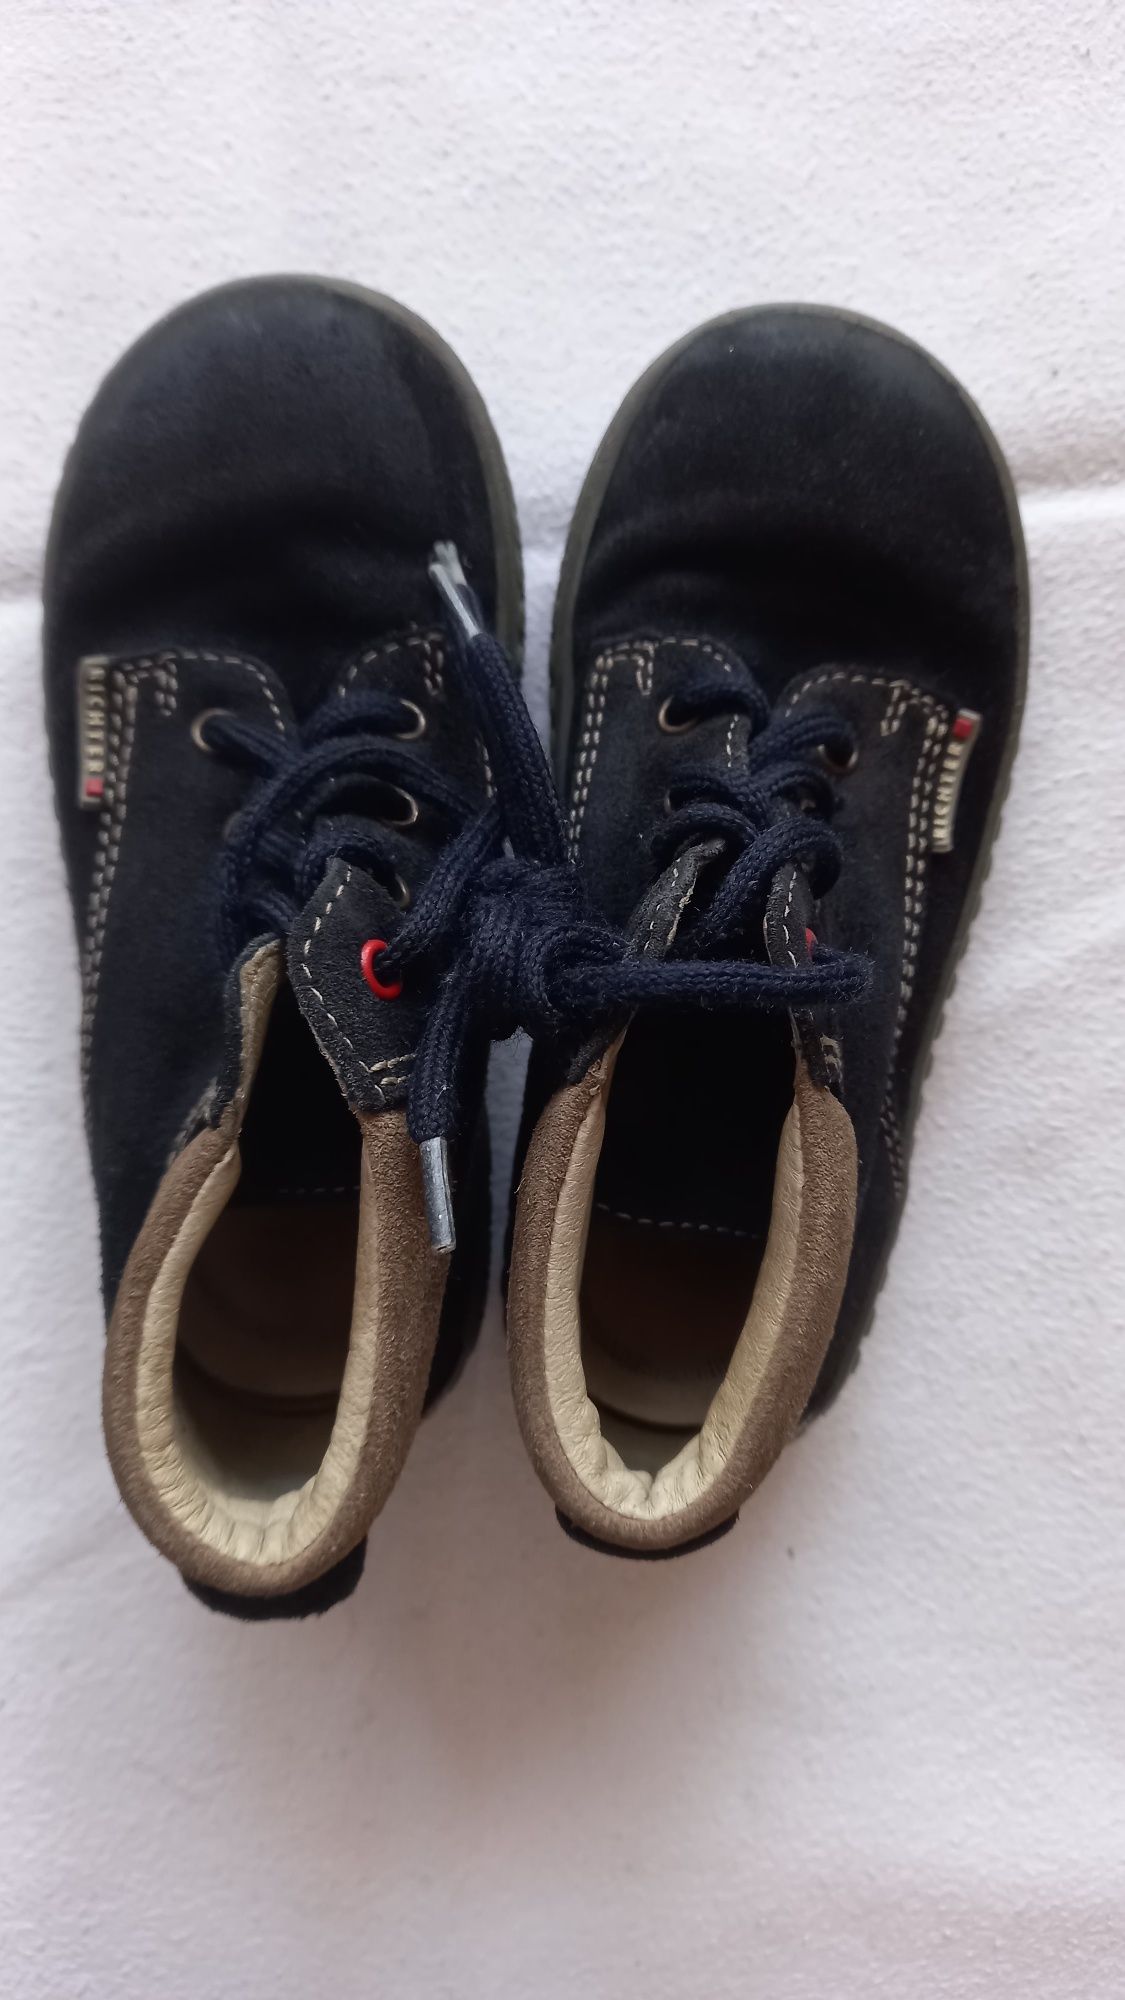 Весенние-осенние сапоги ботинки для мальчика 25 размер